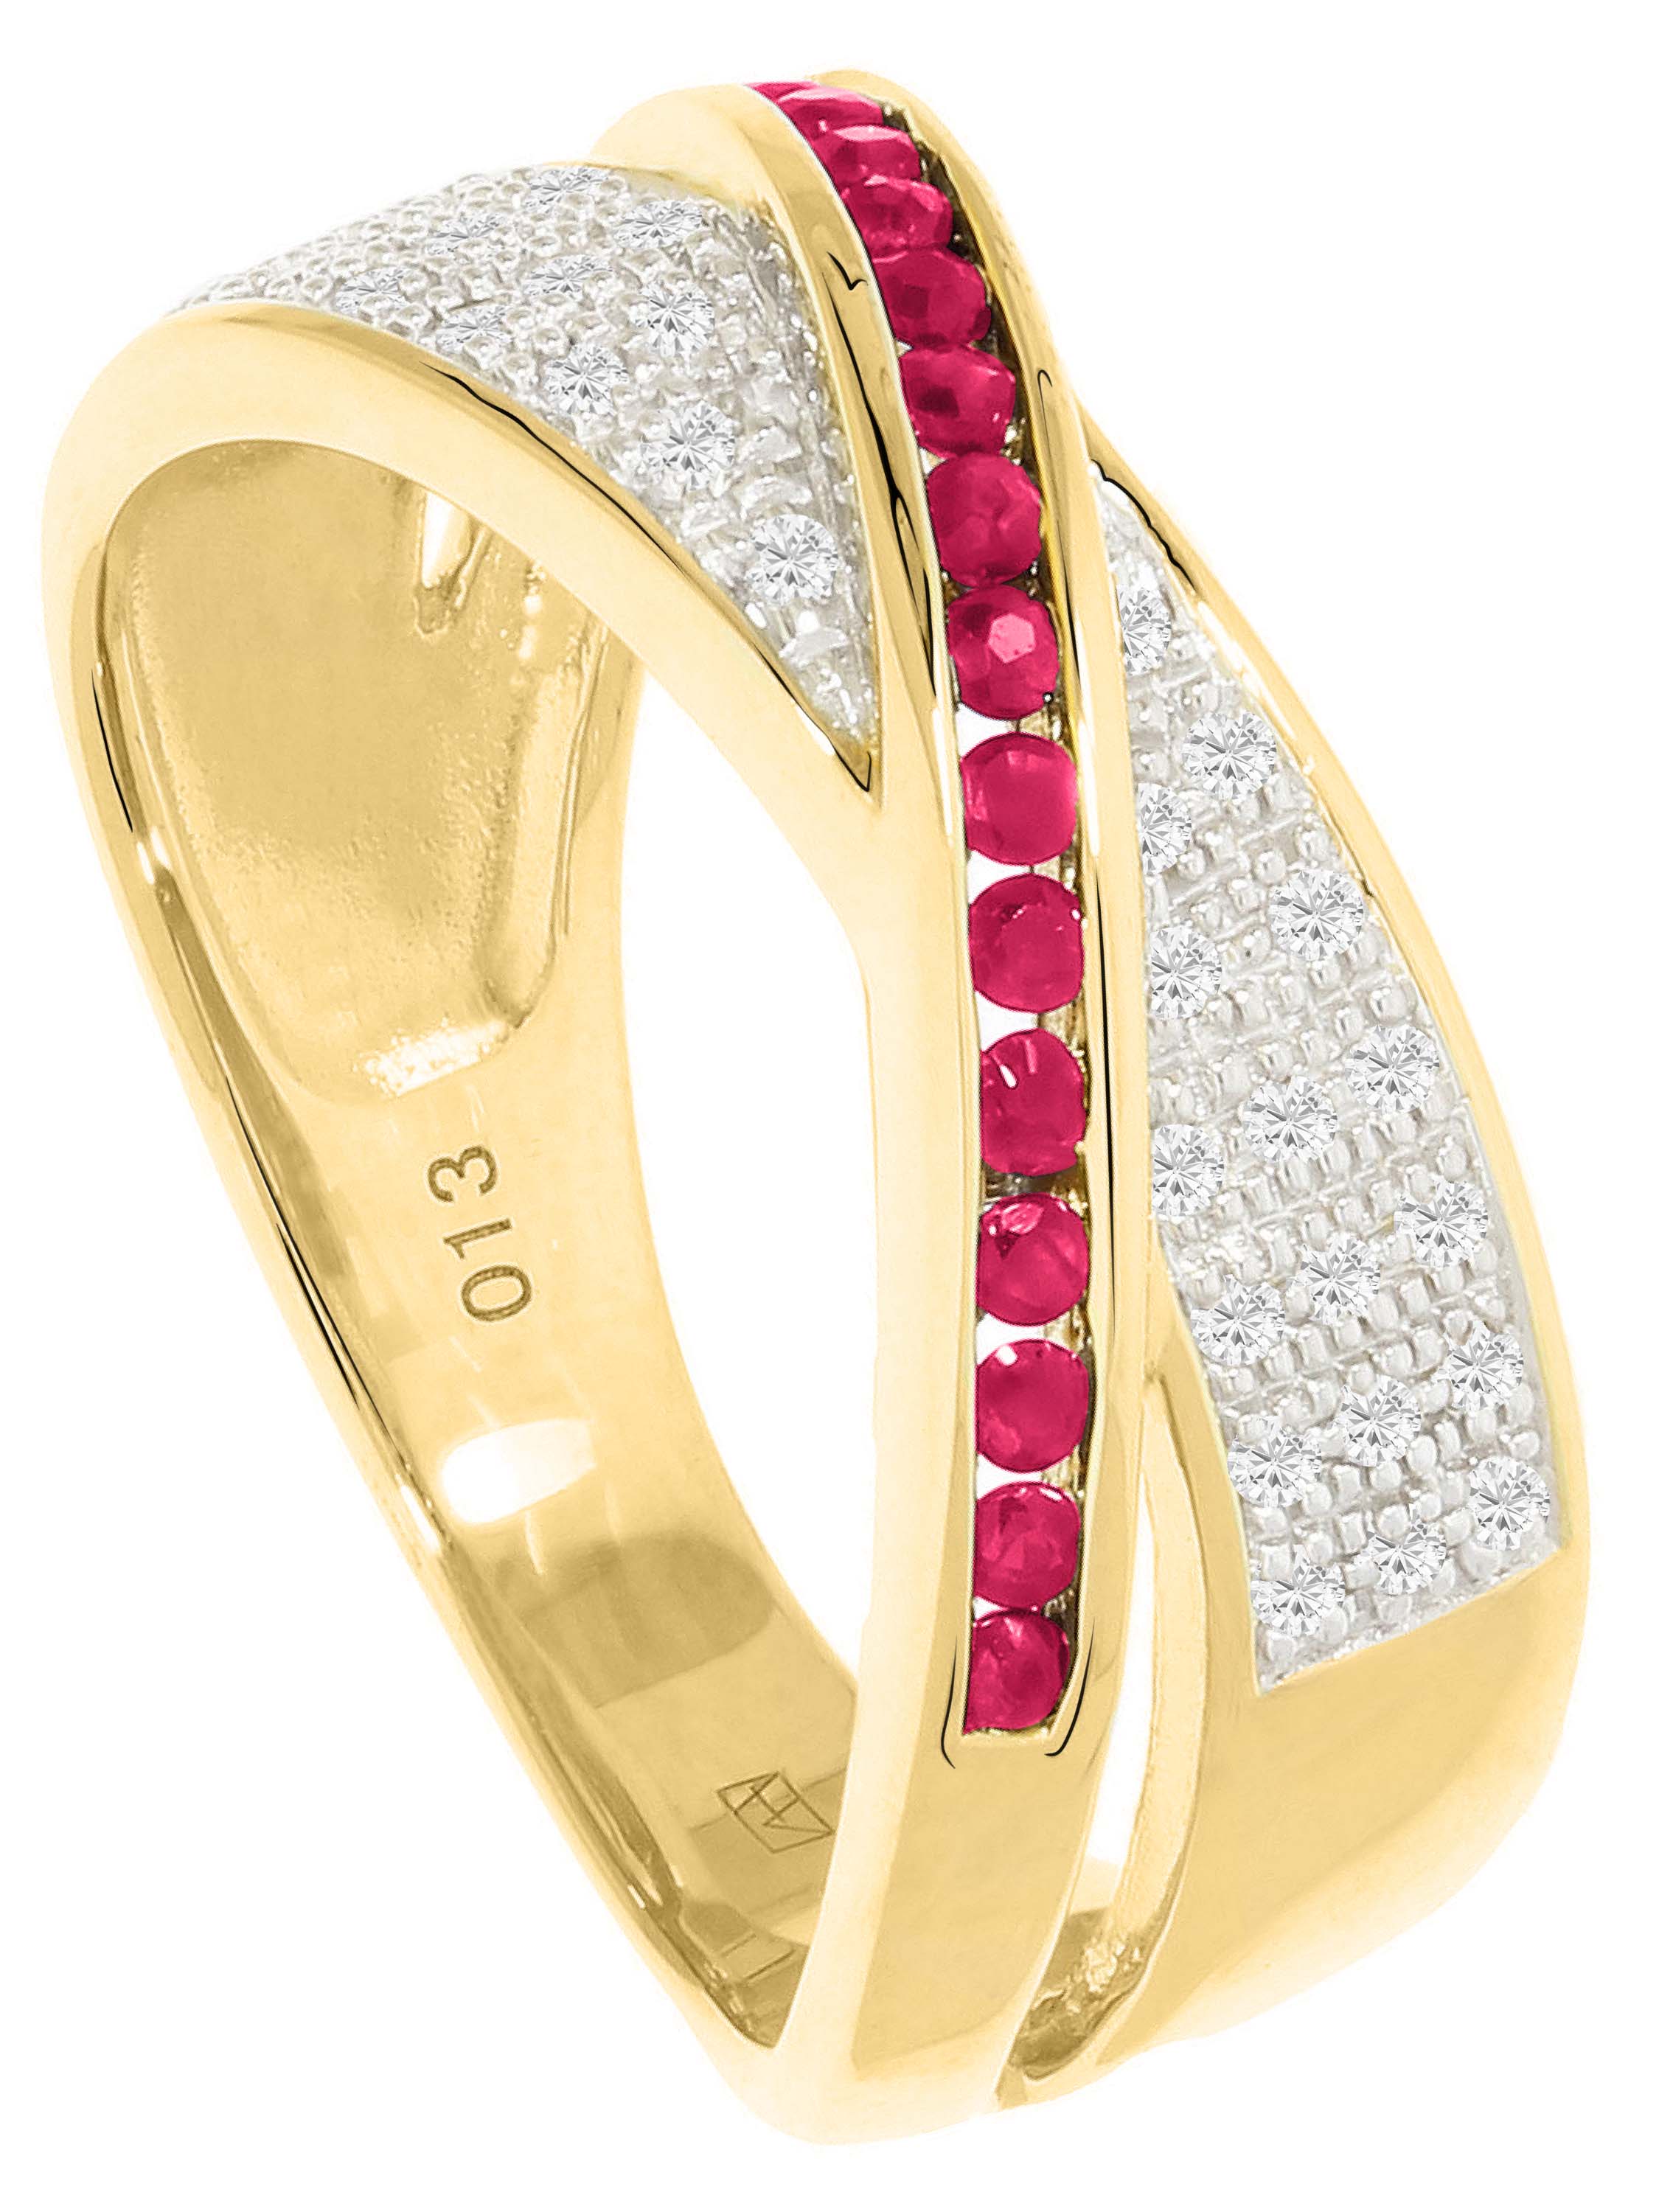 Melvena - Rubin & Diamant Ring mit Edelstein 585 Gold - 0,13ct. - Größe 54